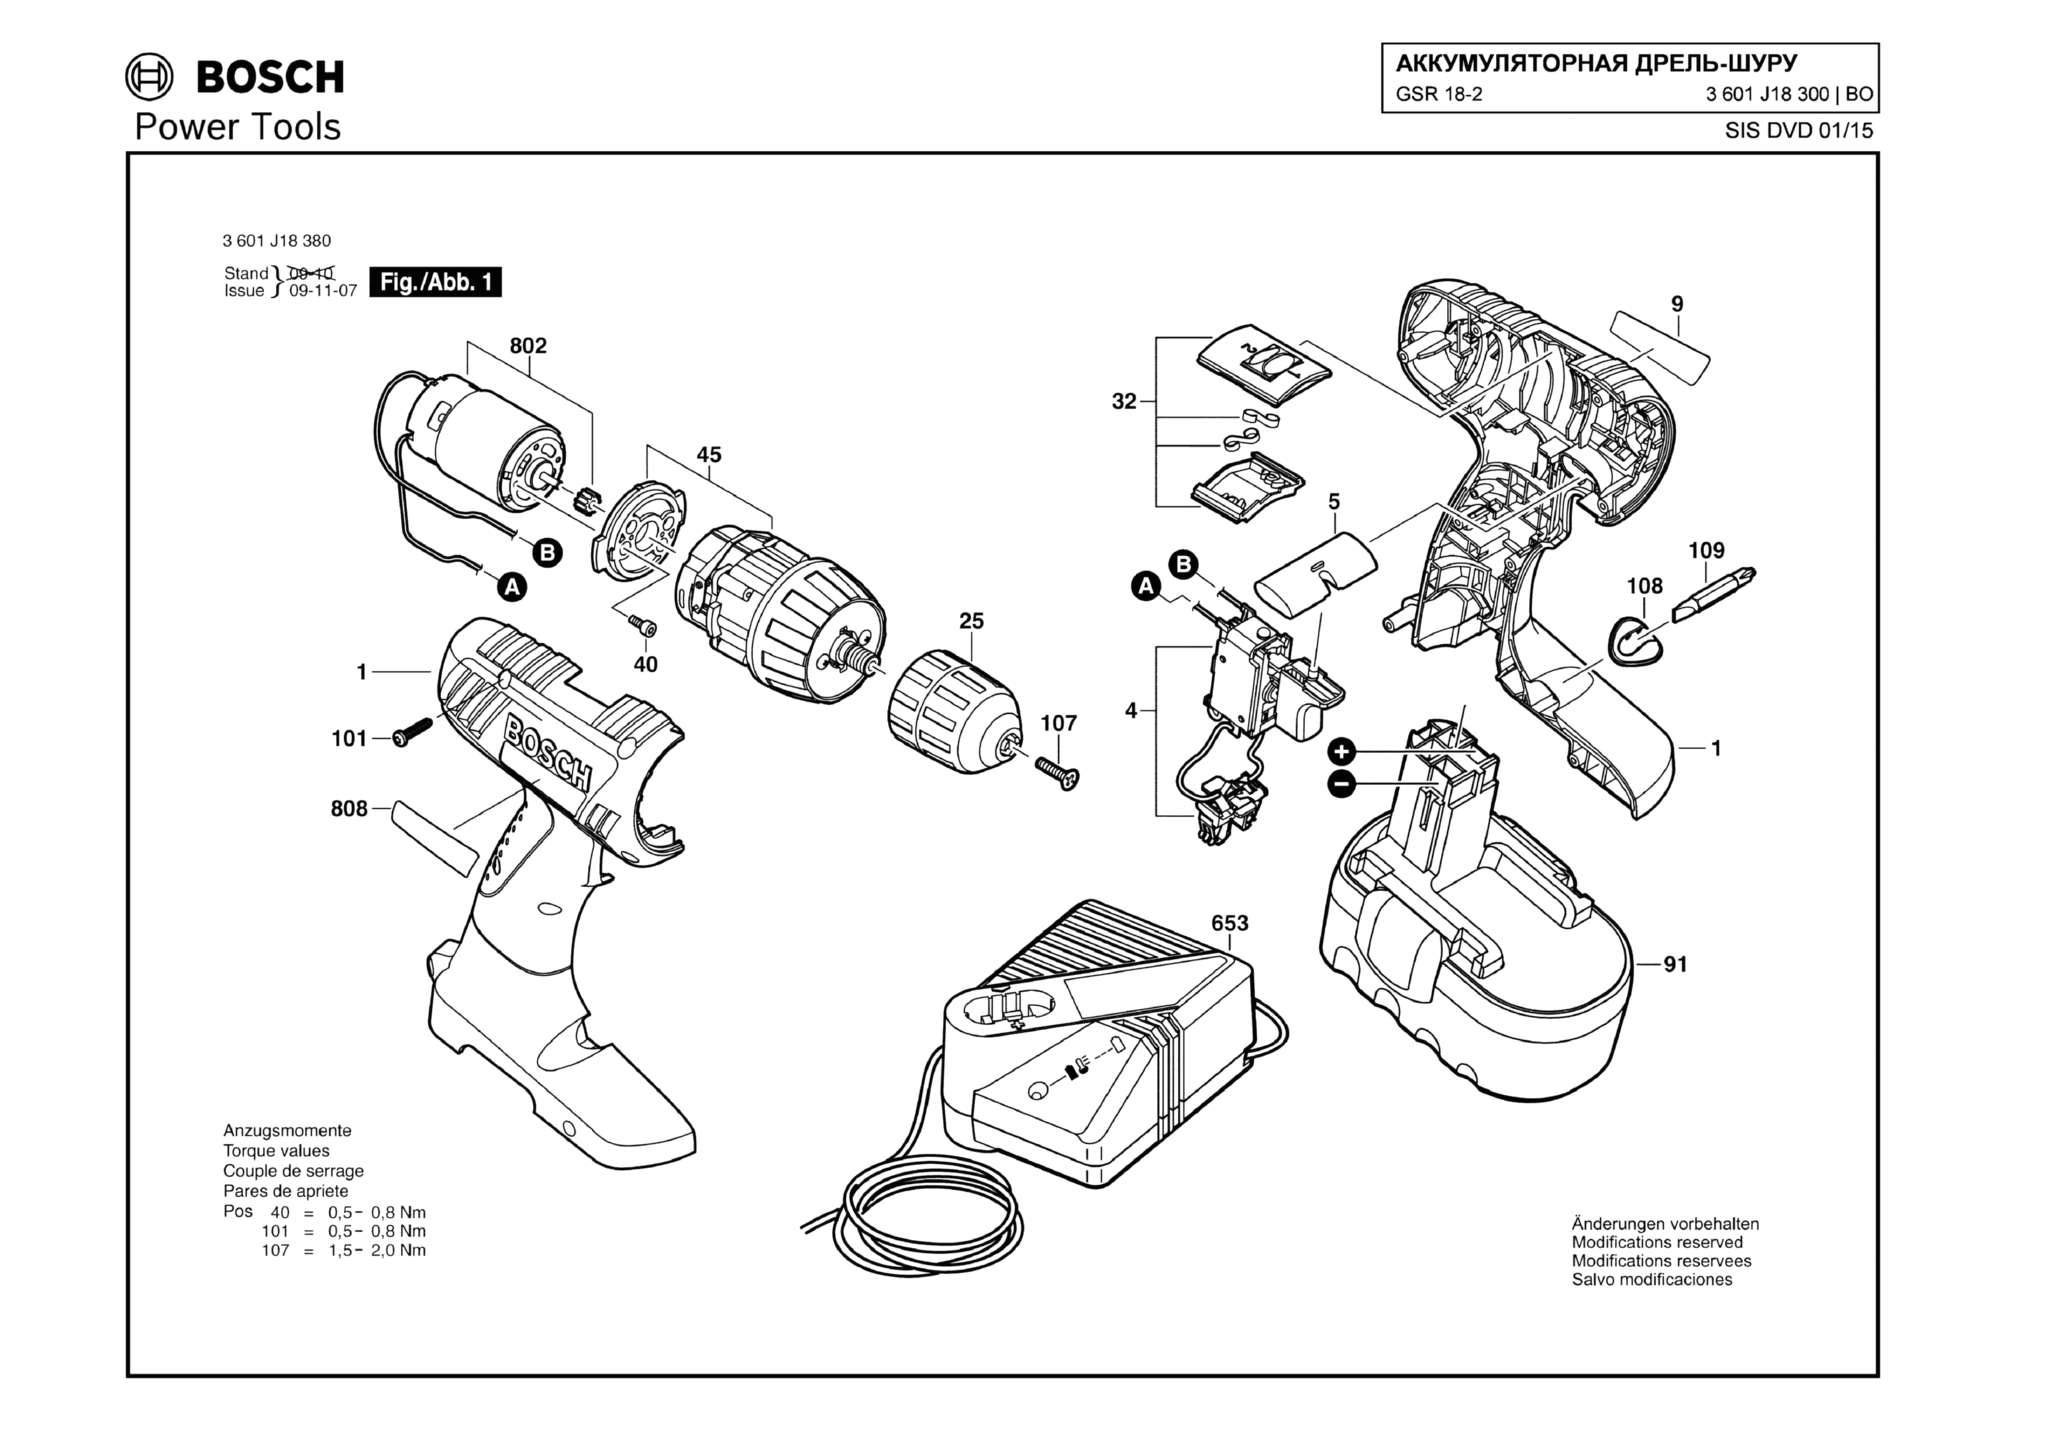 Запчасти, схема и деталировка Bosch GSR 18-2 (ТИП 3601J18300)